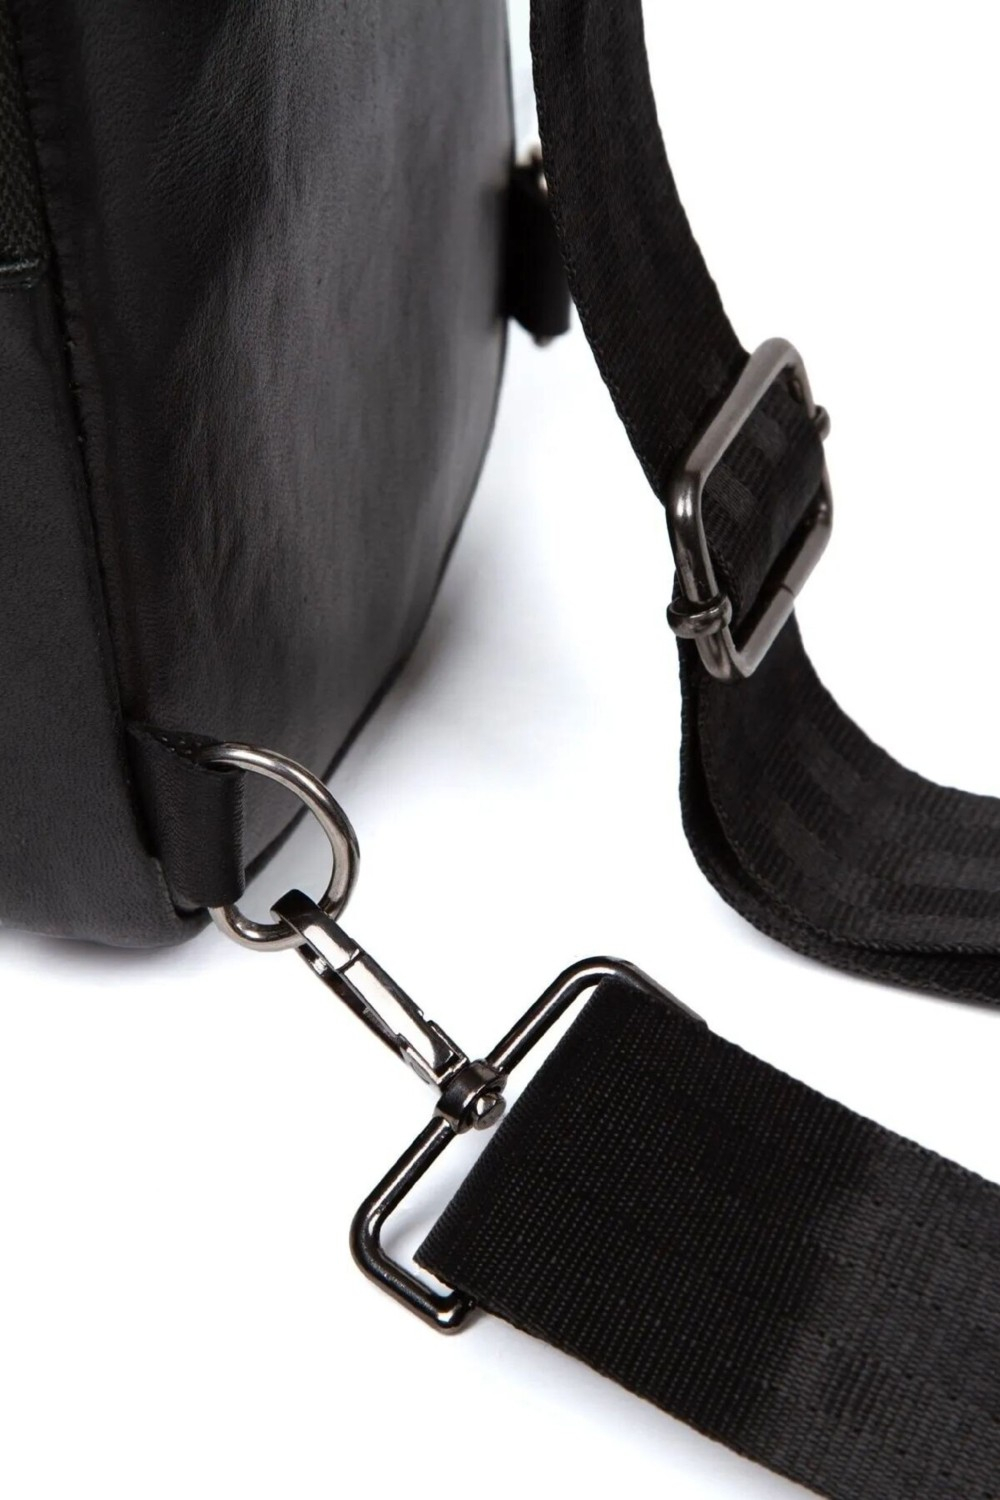 Сумка-рюкзак Polo с выходом для наушников через грудь из натуральной кожи.